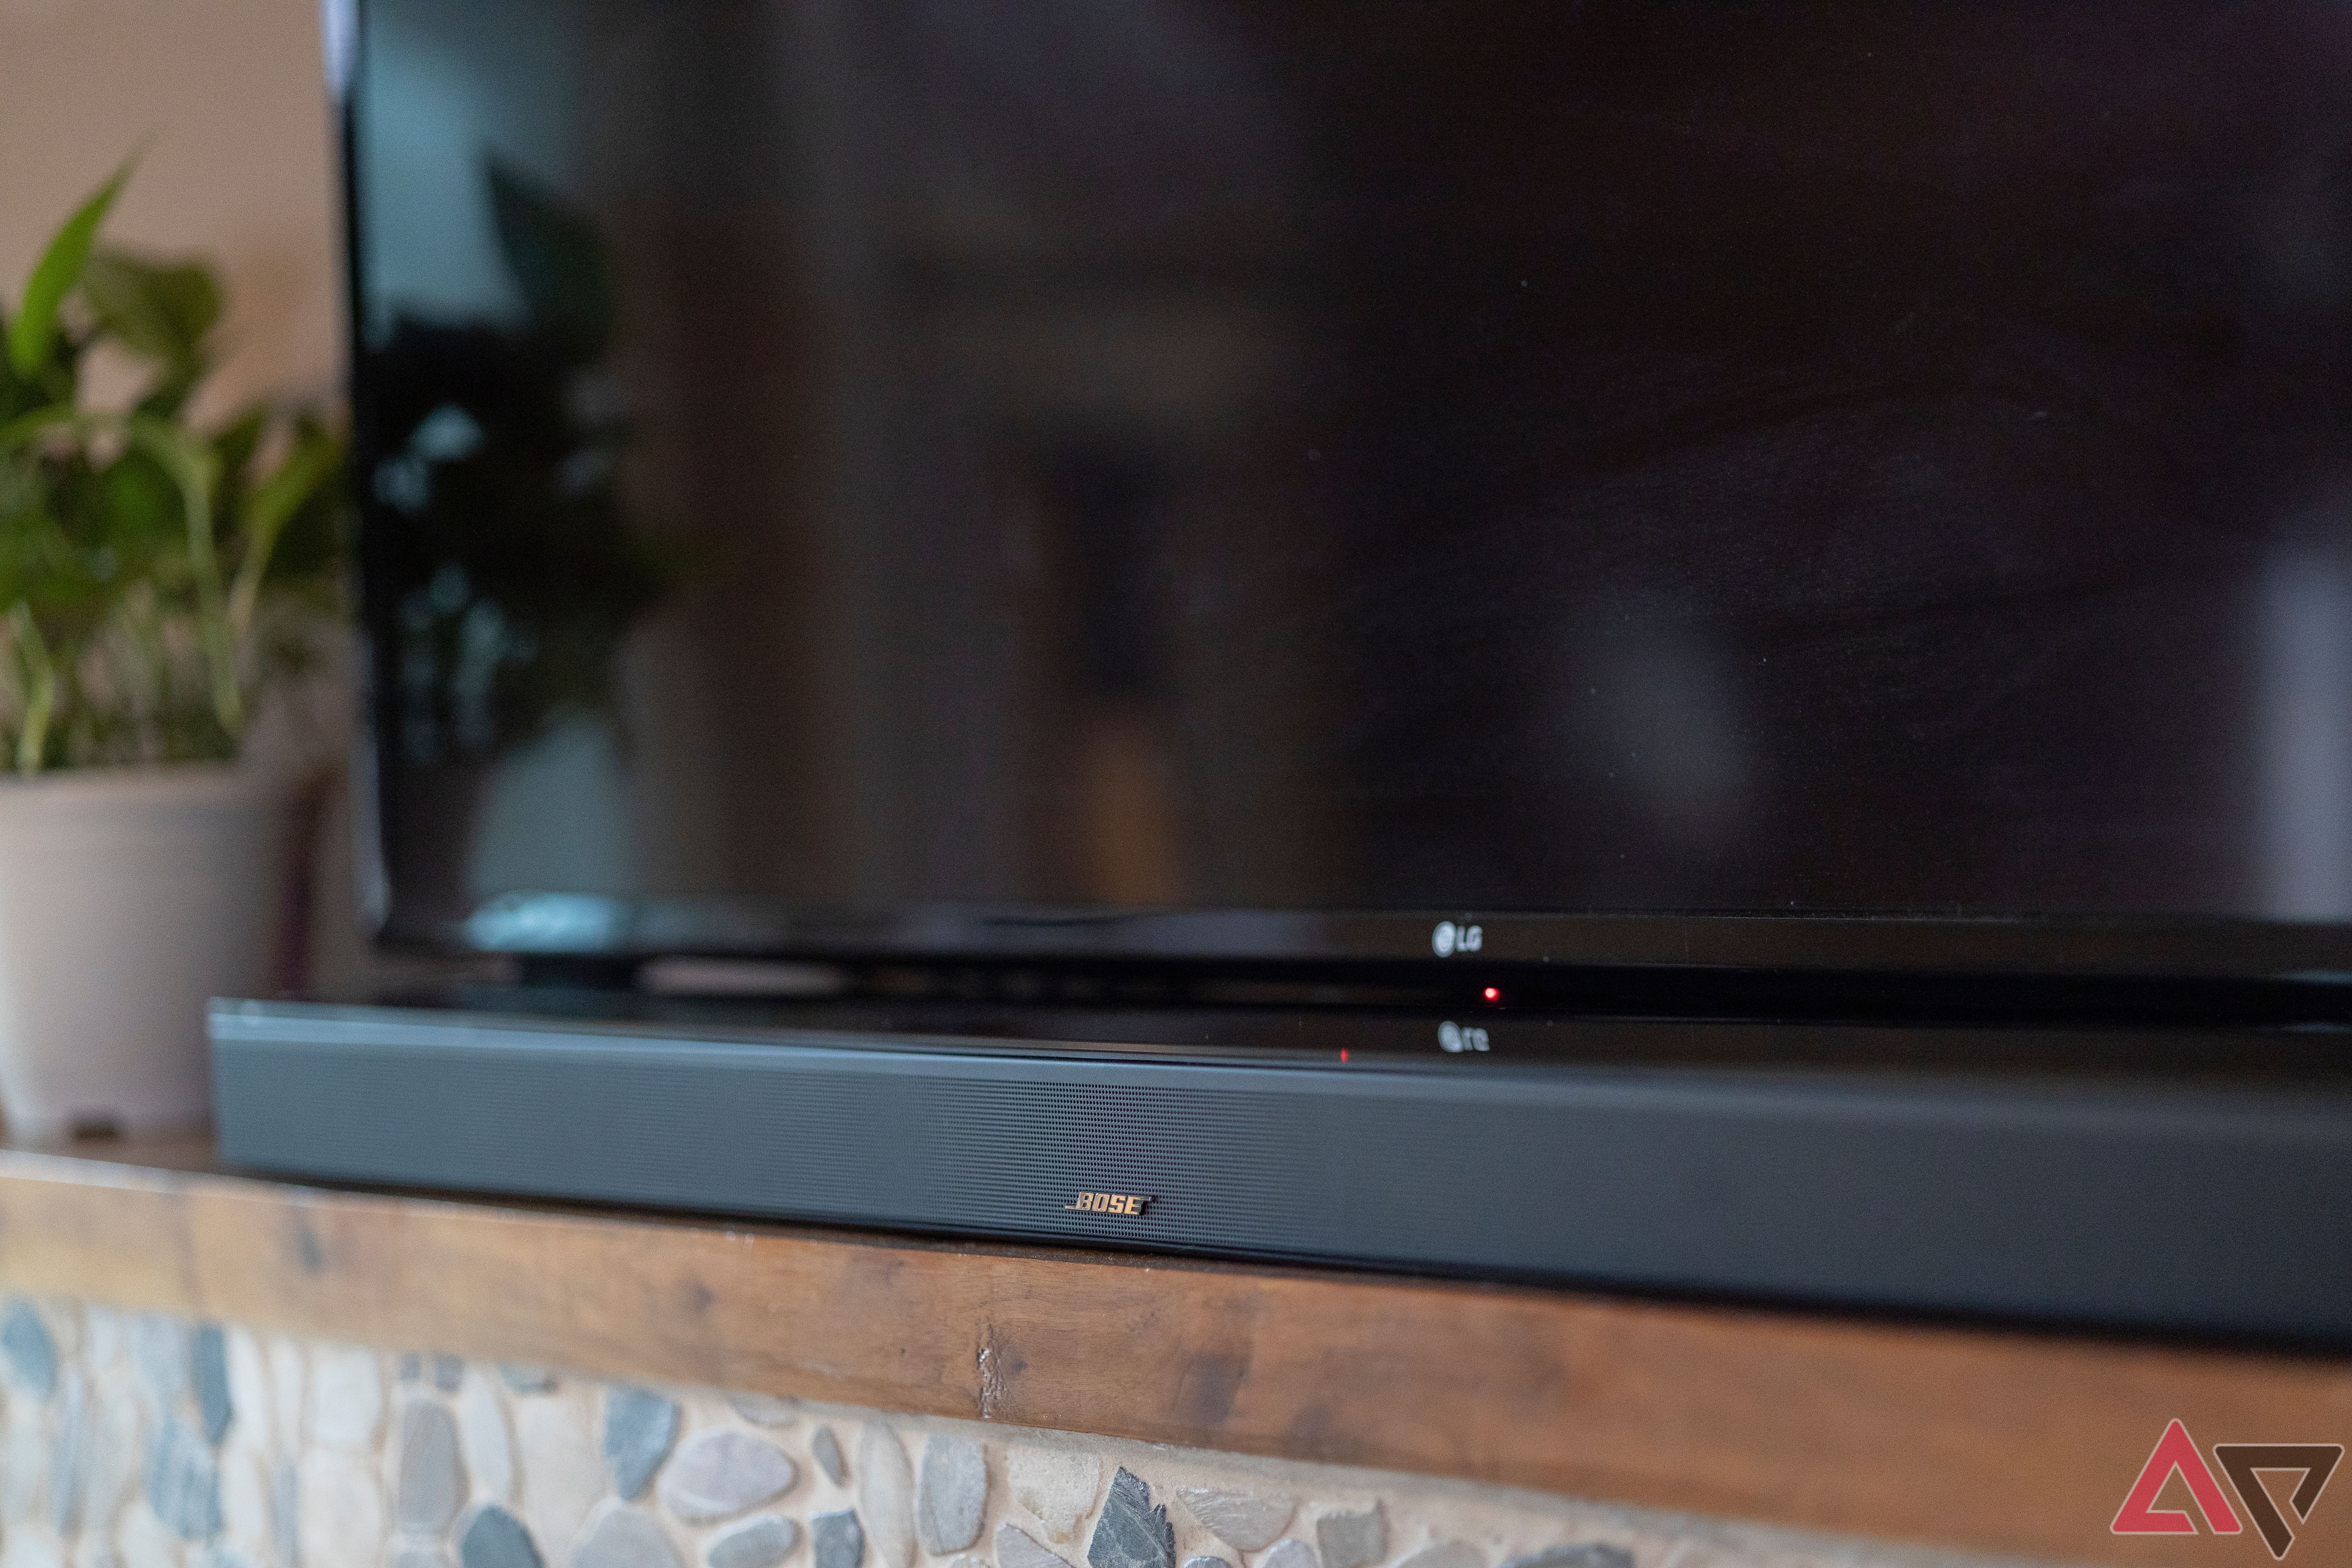 Close up of Bose Smart Ultra soundbar on mantle under TV